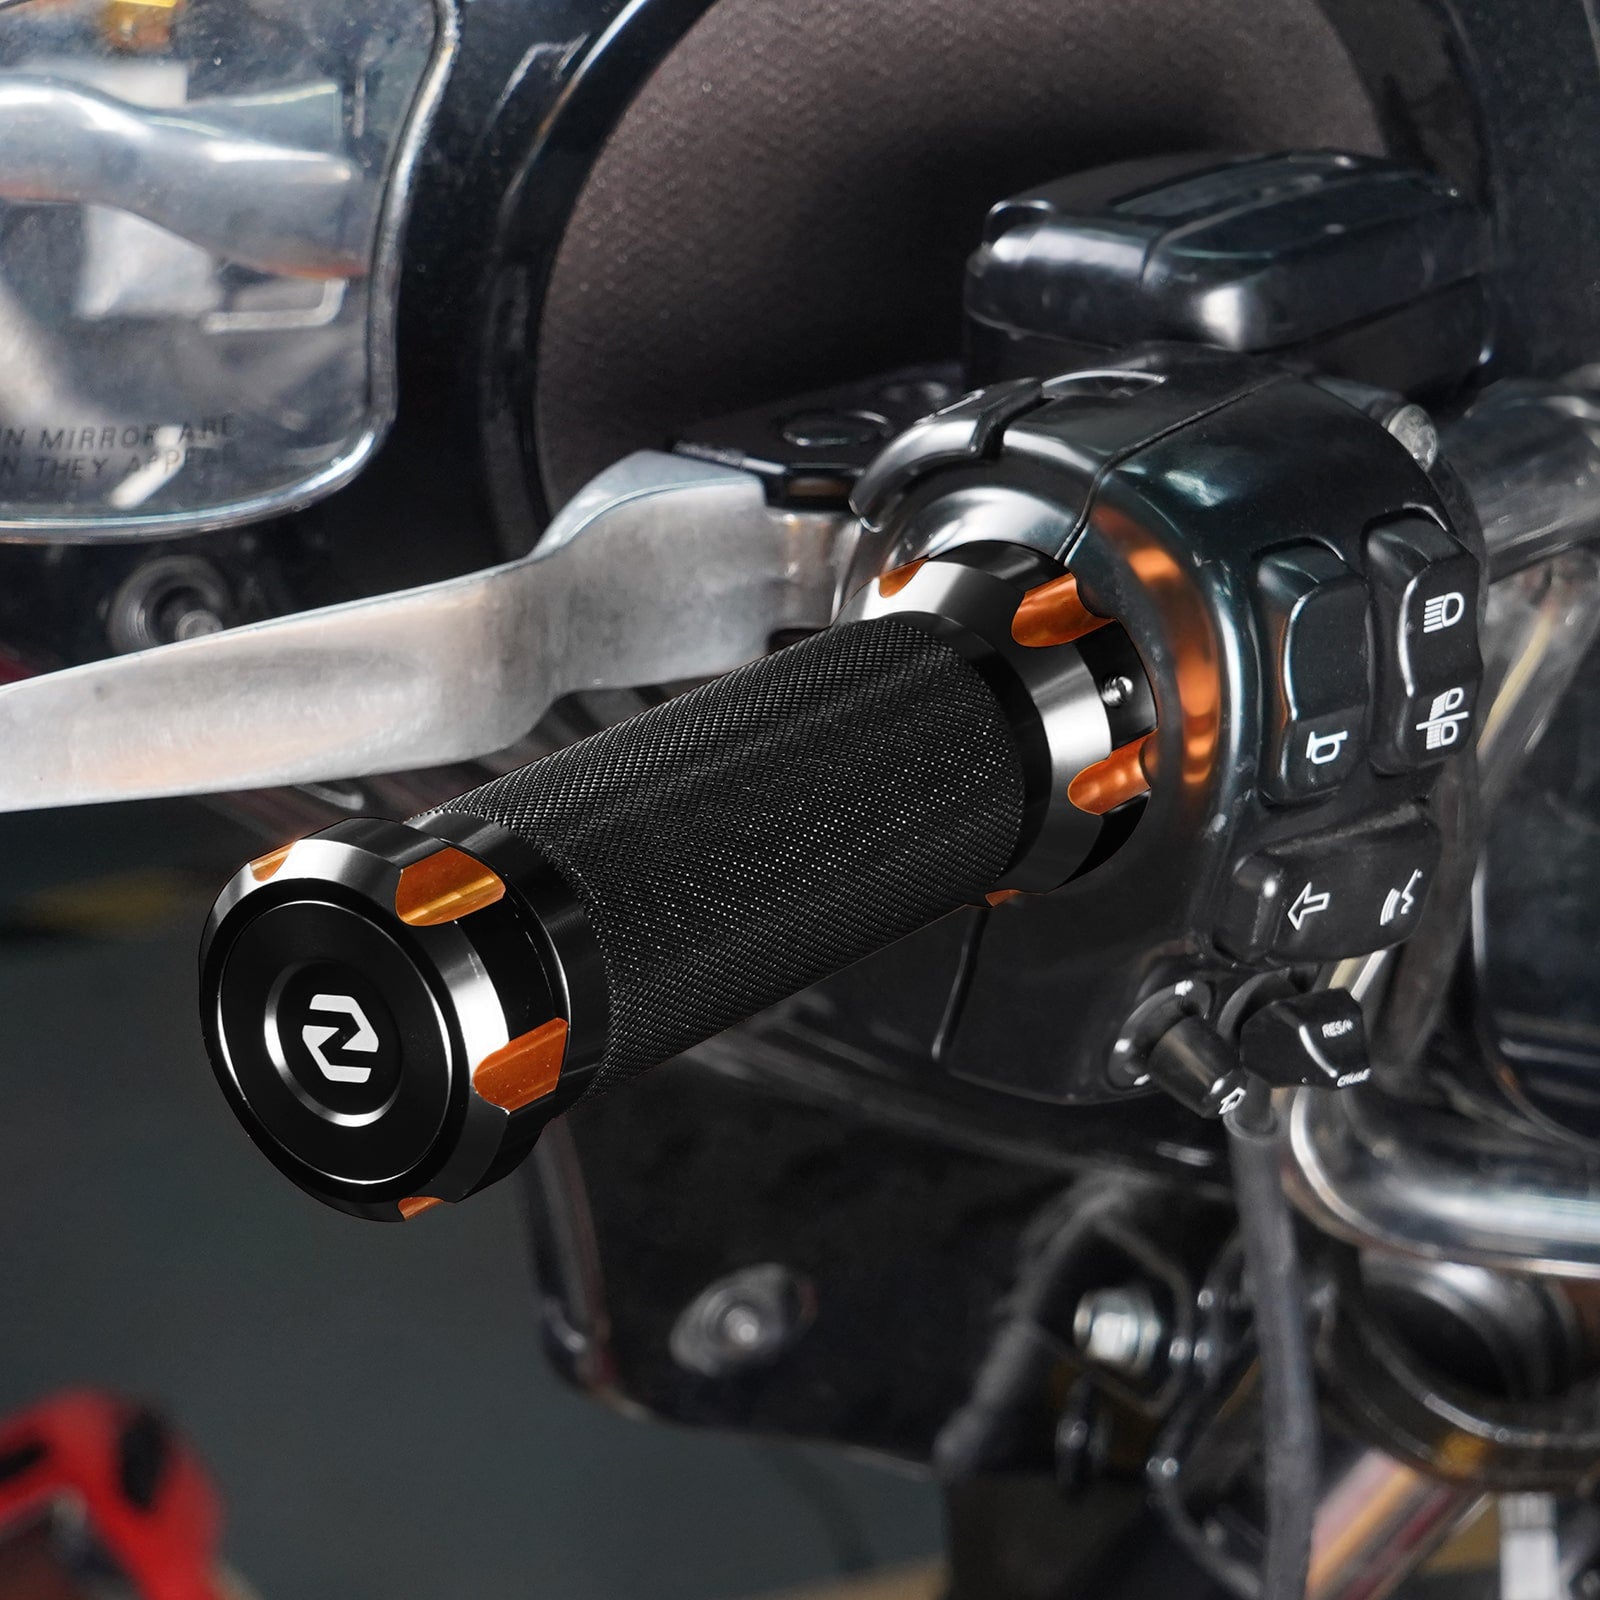 Aluminum Handlebar Grips For Harley Davidson